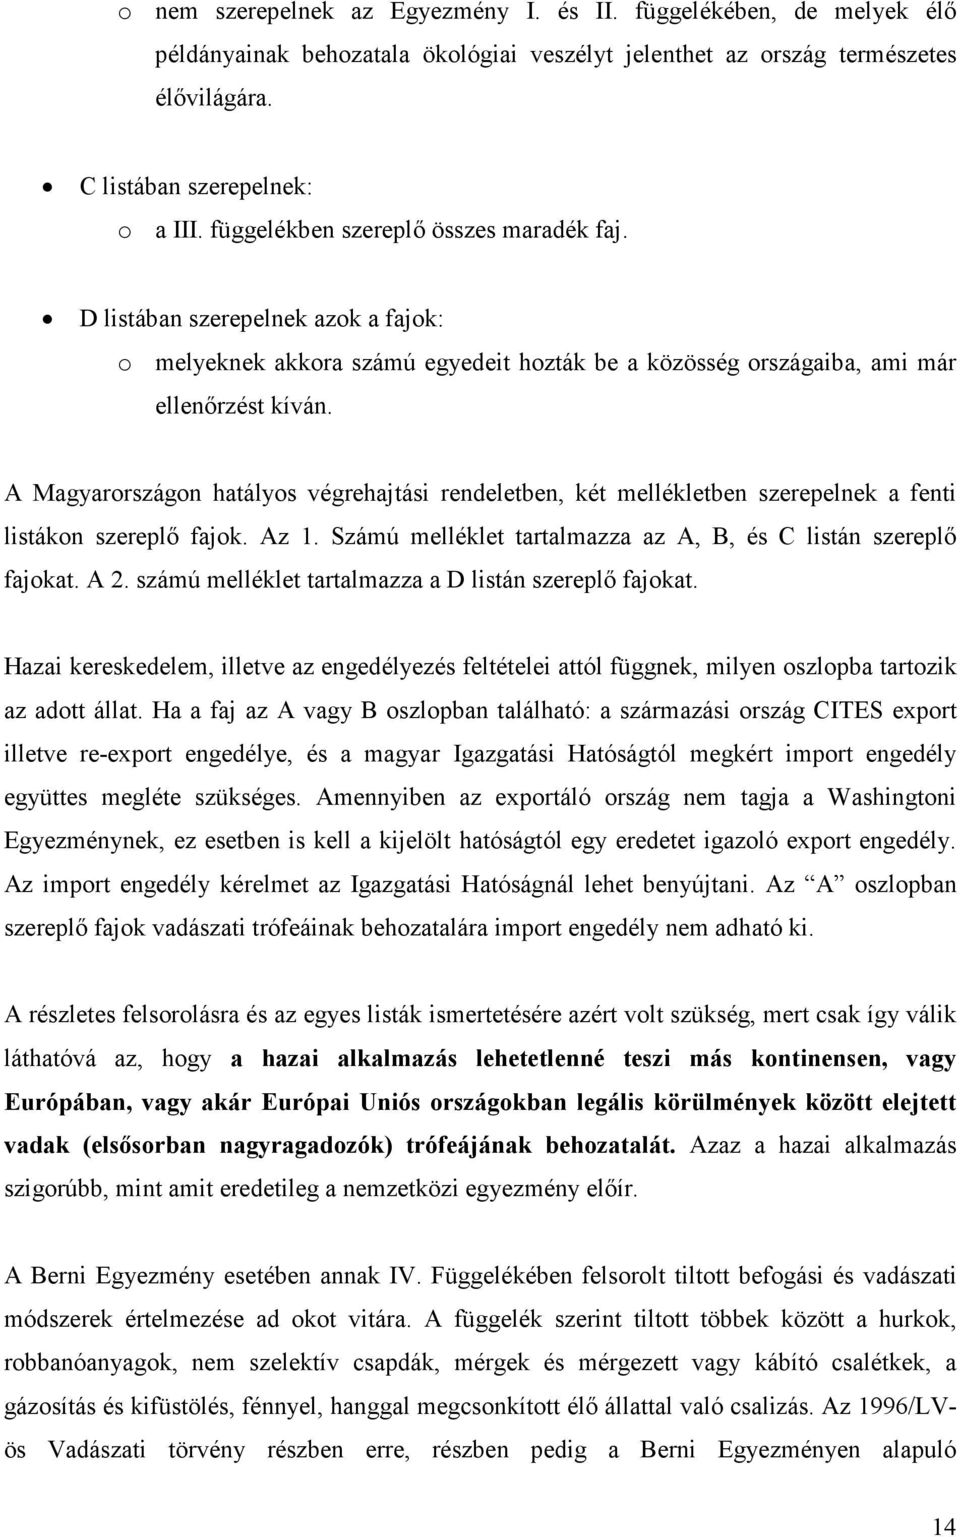 A Magyarországon hatályos végrehajtási rendeletben, két mellékletben szerepelnek a fenti listákon szereplı fajok. Az 1. Számú melléklet tartalmazza az A, B, és C listán szereplı fajokat. A 2.